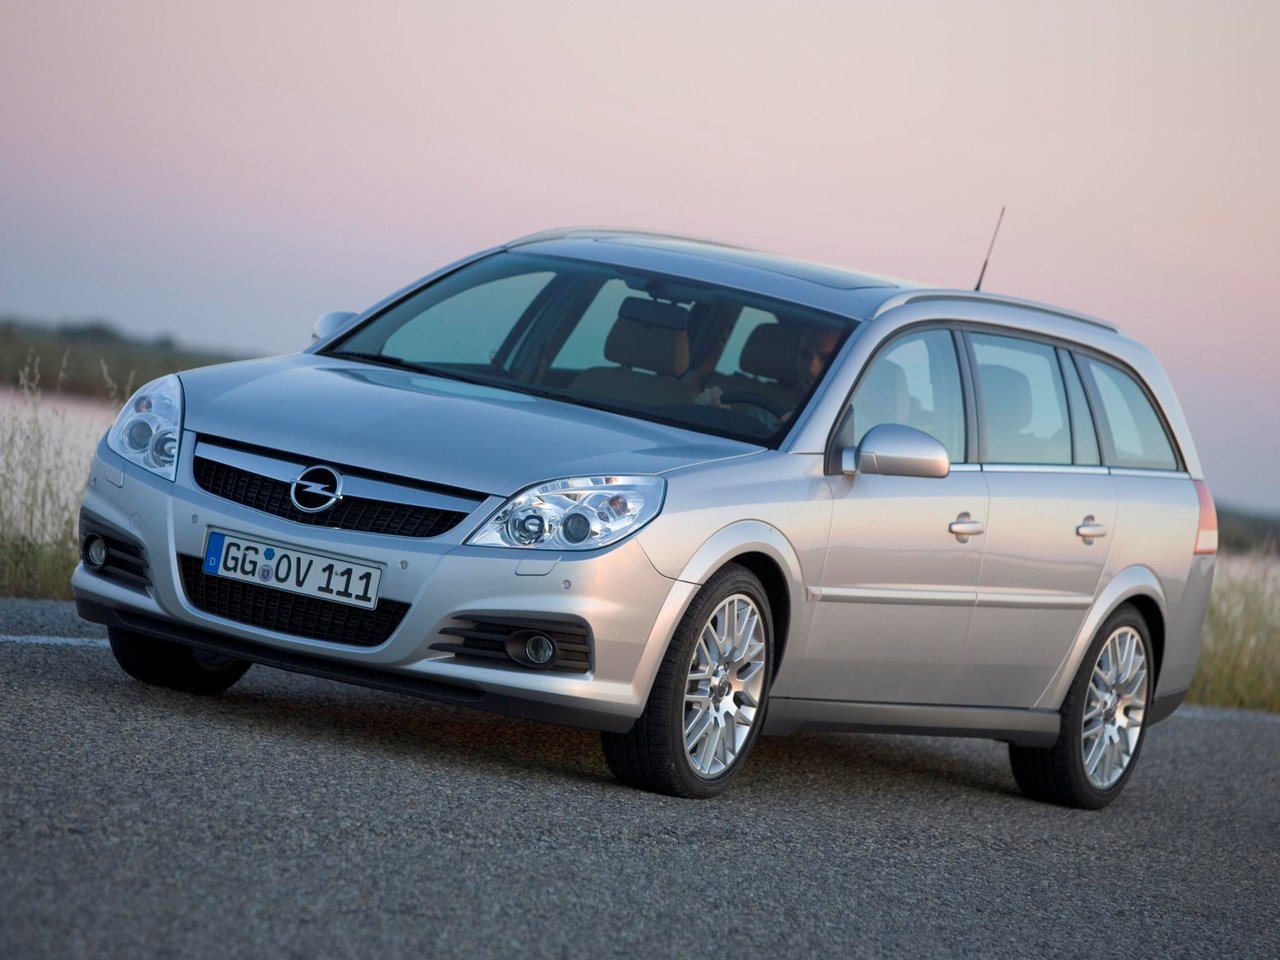 Расход газа семи комплектаций универсала пять дверей Opel Vectra. Разница стоимости заправки газом и бензином. Автономный пробег до и после установки ГБО.